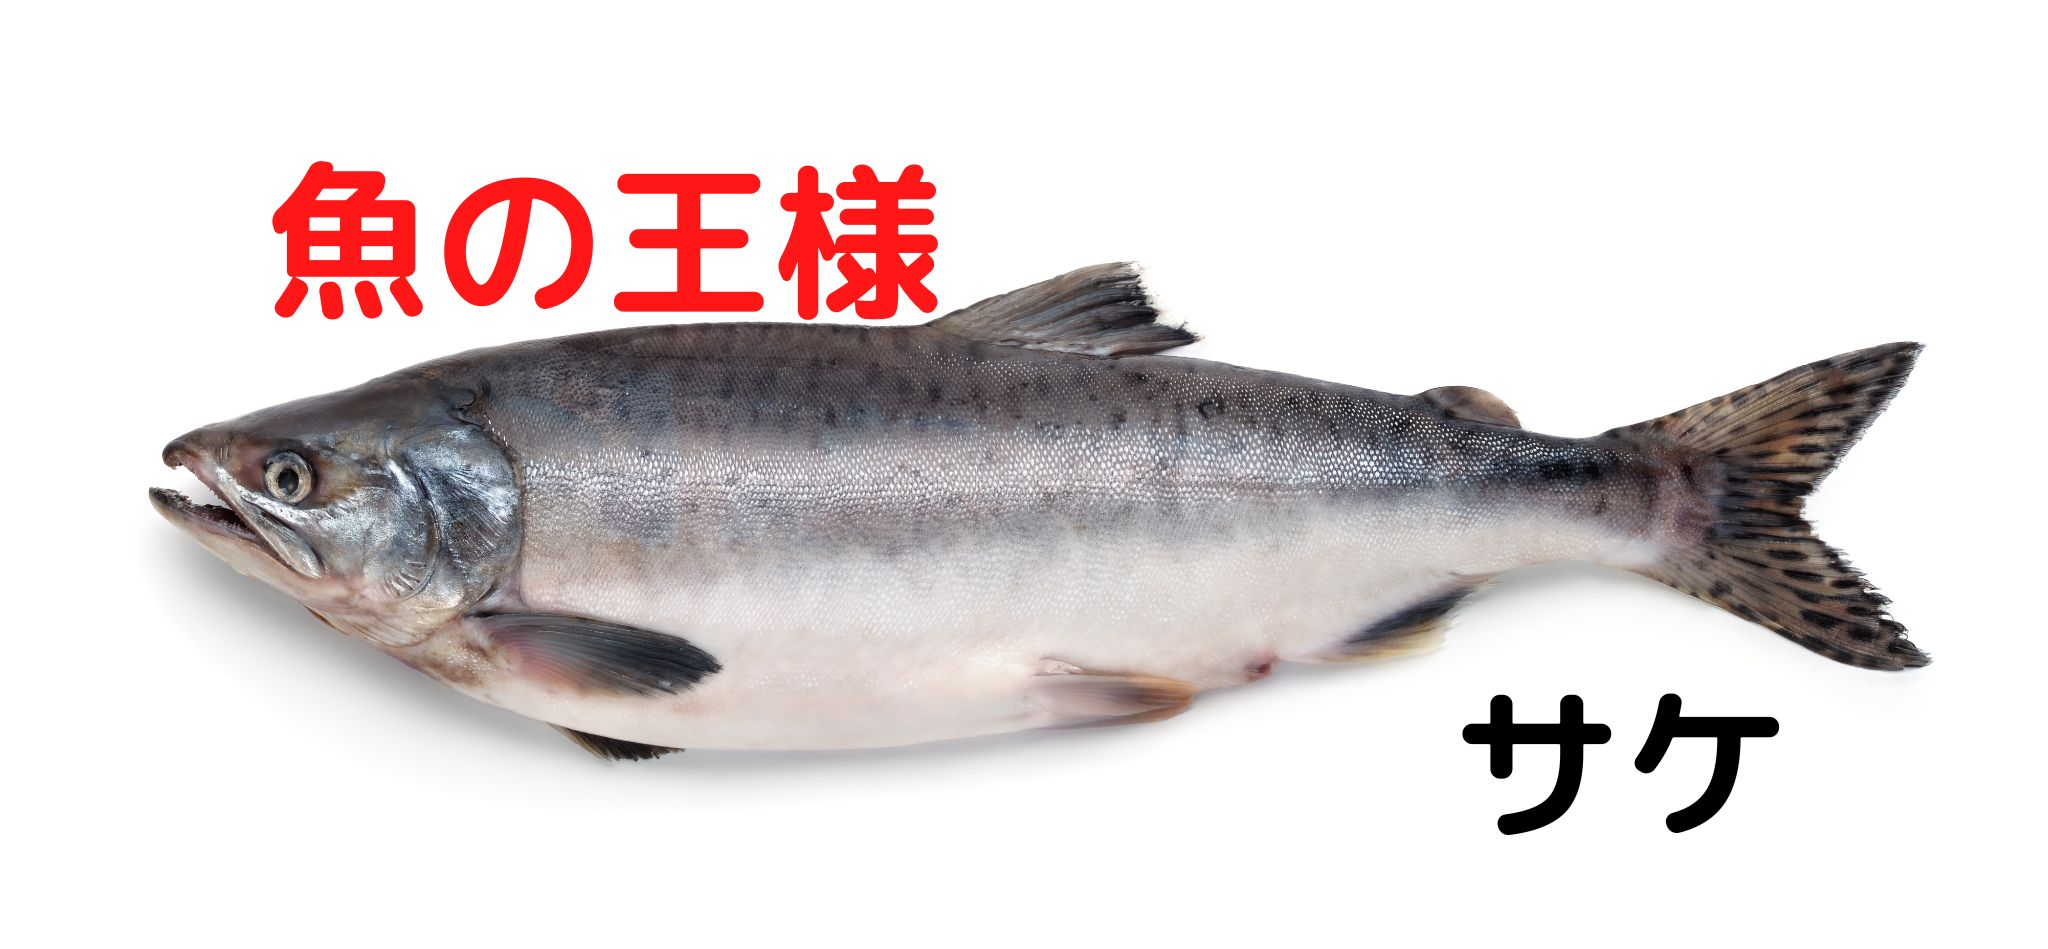 北海道を代表する魚「サケ」。でも絶対に〇〇食べちゃダメ！